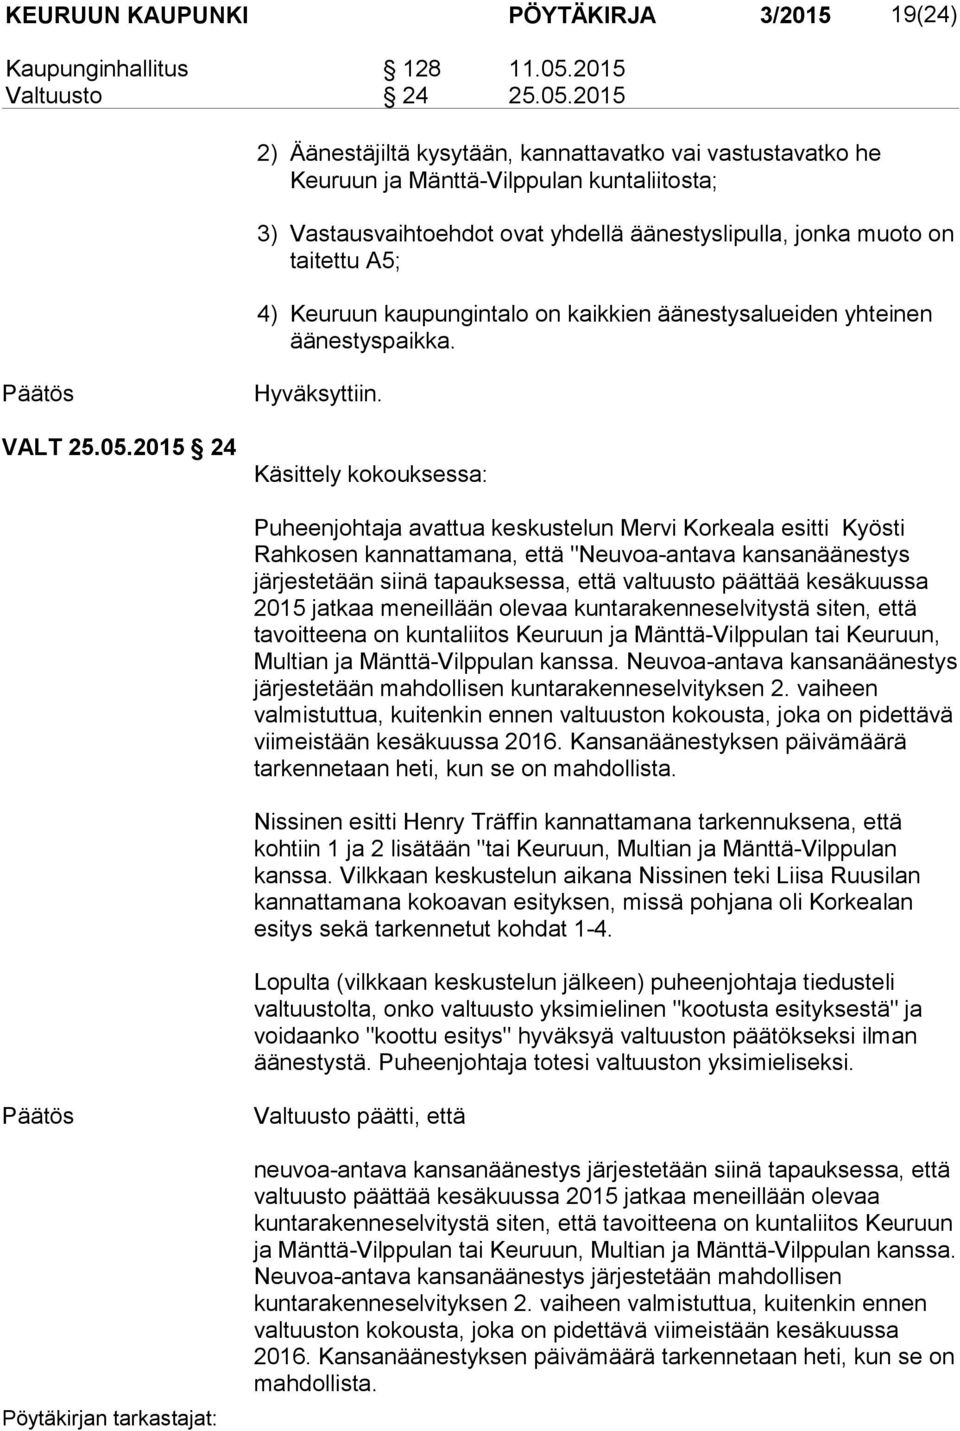 2015 2) Äänestäjiltä kysytään, kannattavatko vai vastustavatko he Keuruun ja Mänttä-Vilppulan kuntaliitosta; 3) Vastausvaihtoehdot ovat yhdellä äänestyslipulla, jonka muoto on taitettu A5; 4) Keuruun